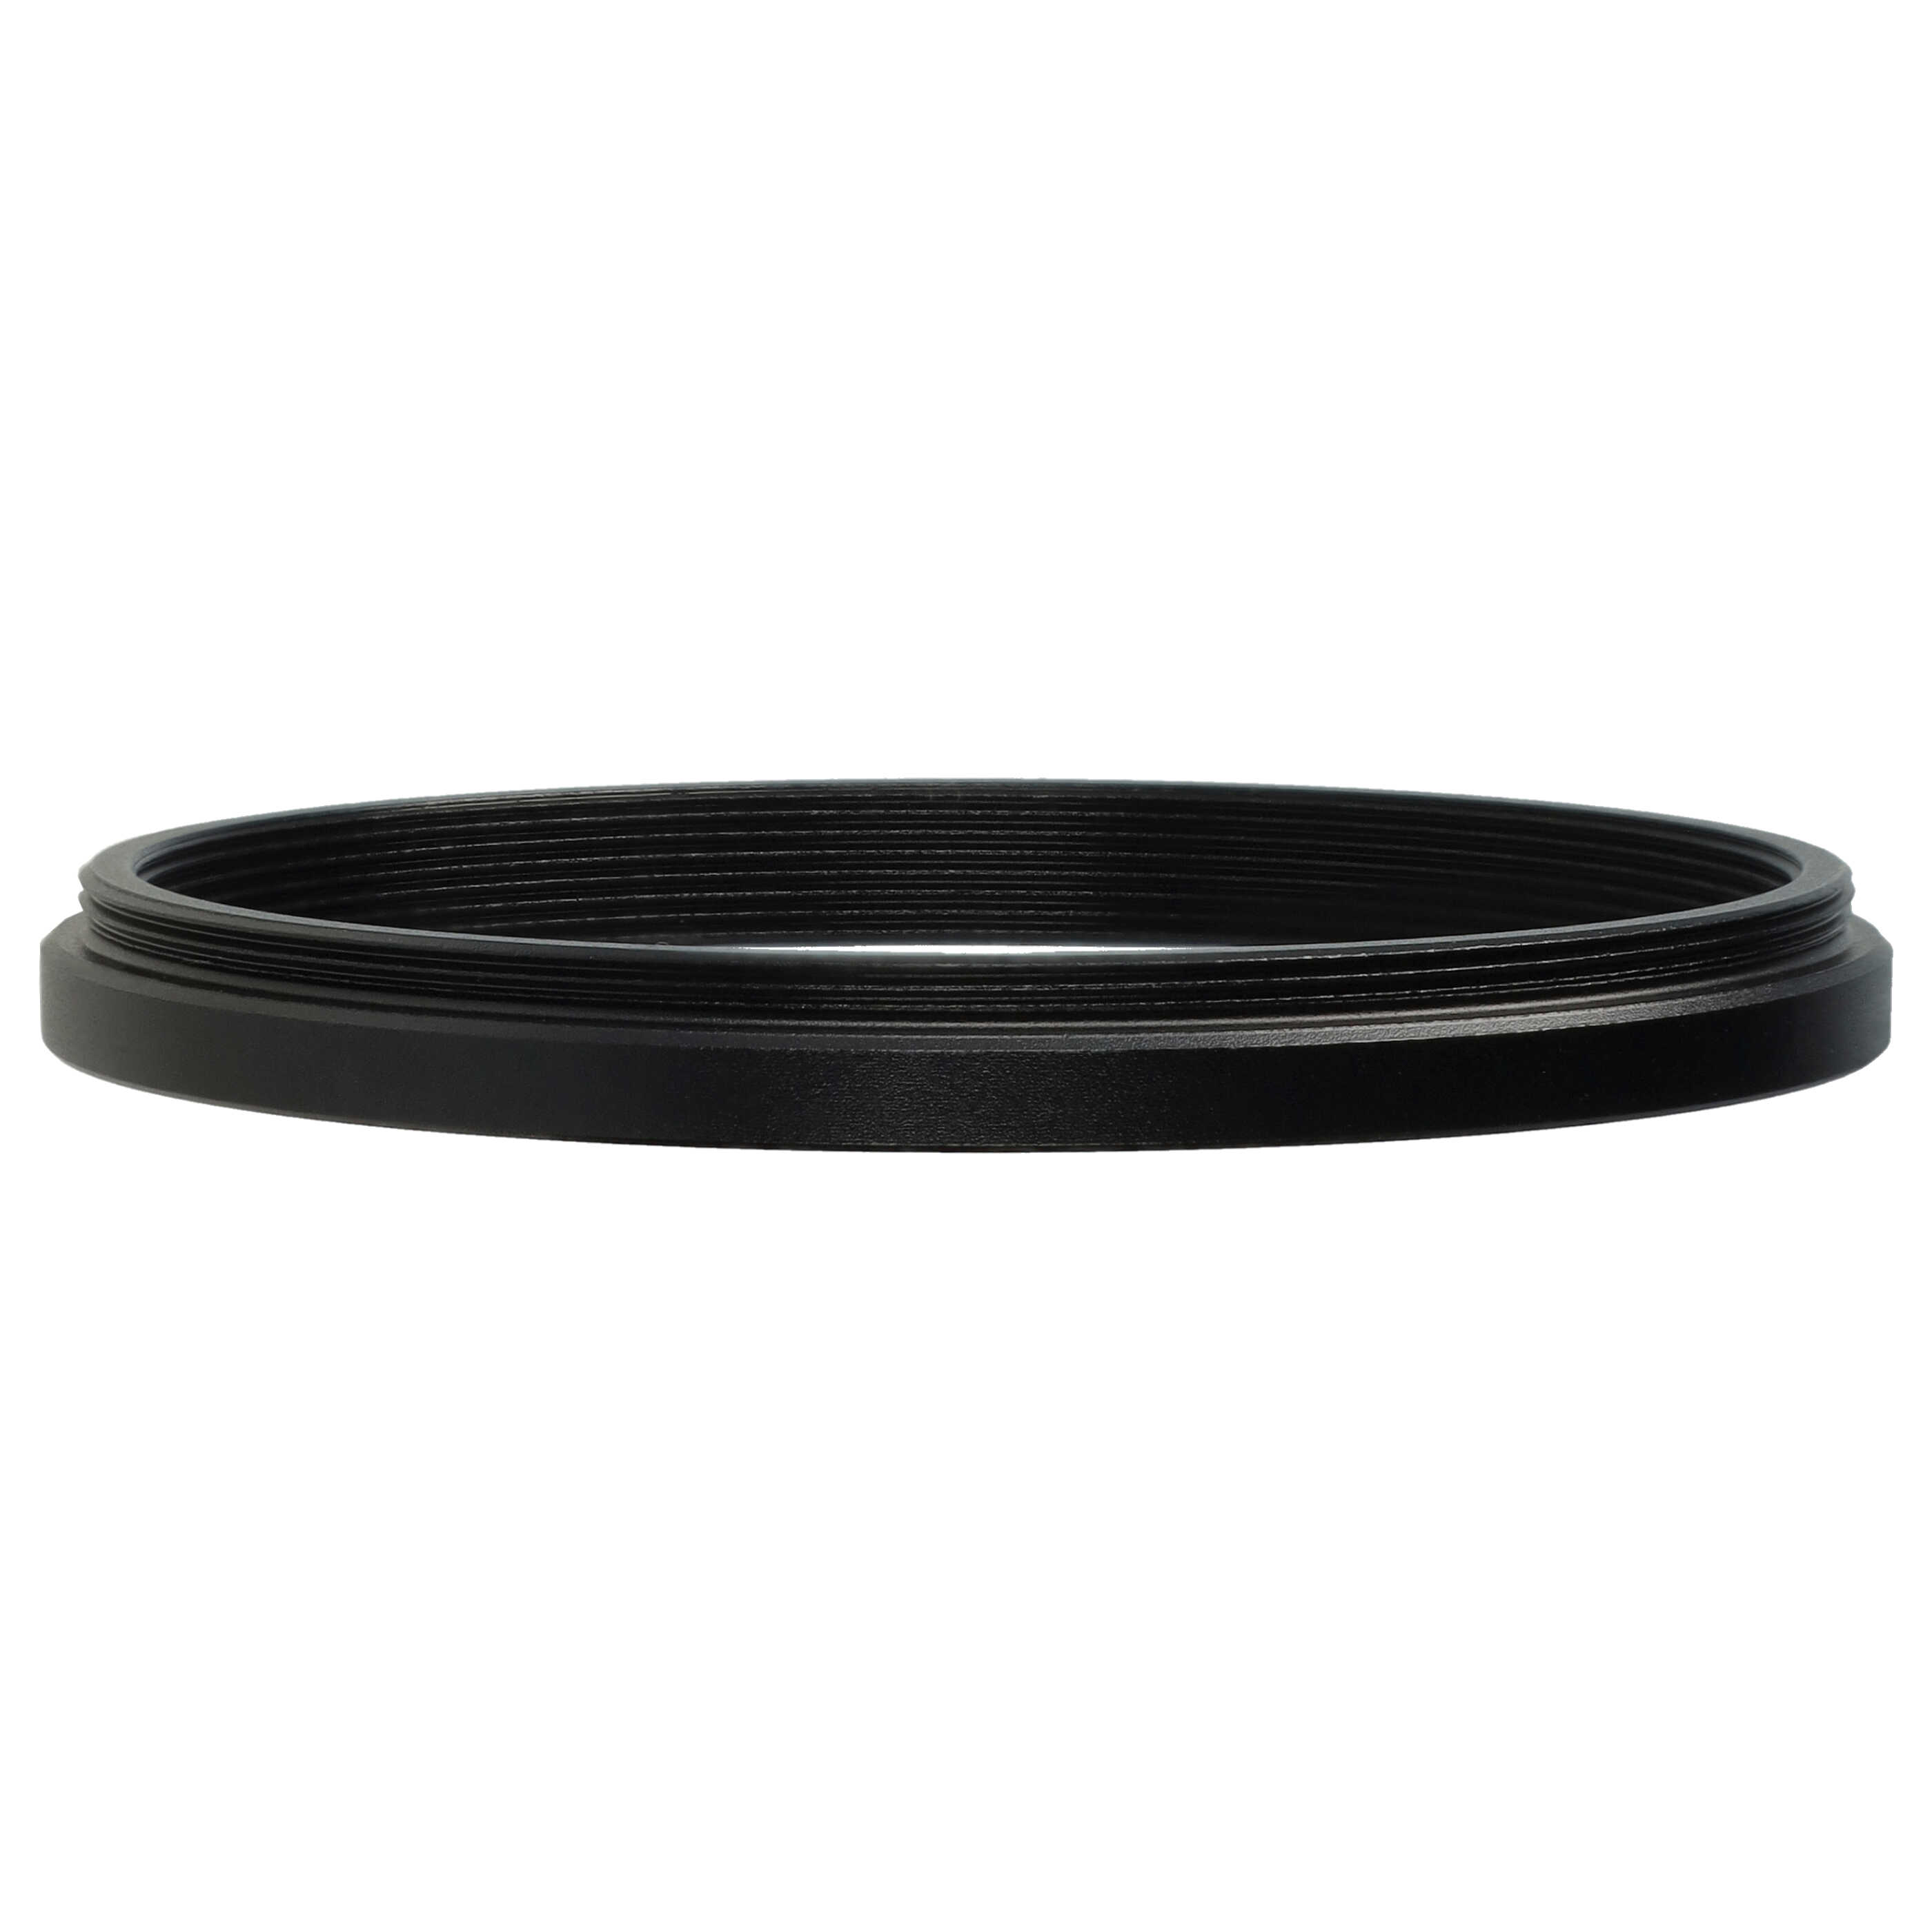 Step-Down-Ring Adapter von 62 mm auf 58 mm passend für Kamera Objektiv - Filteradapter, Metall, schwarz